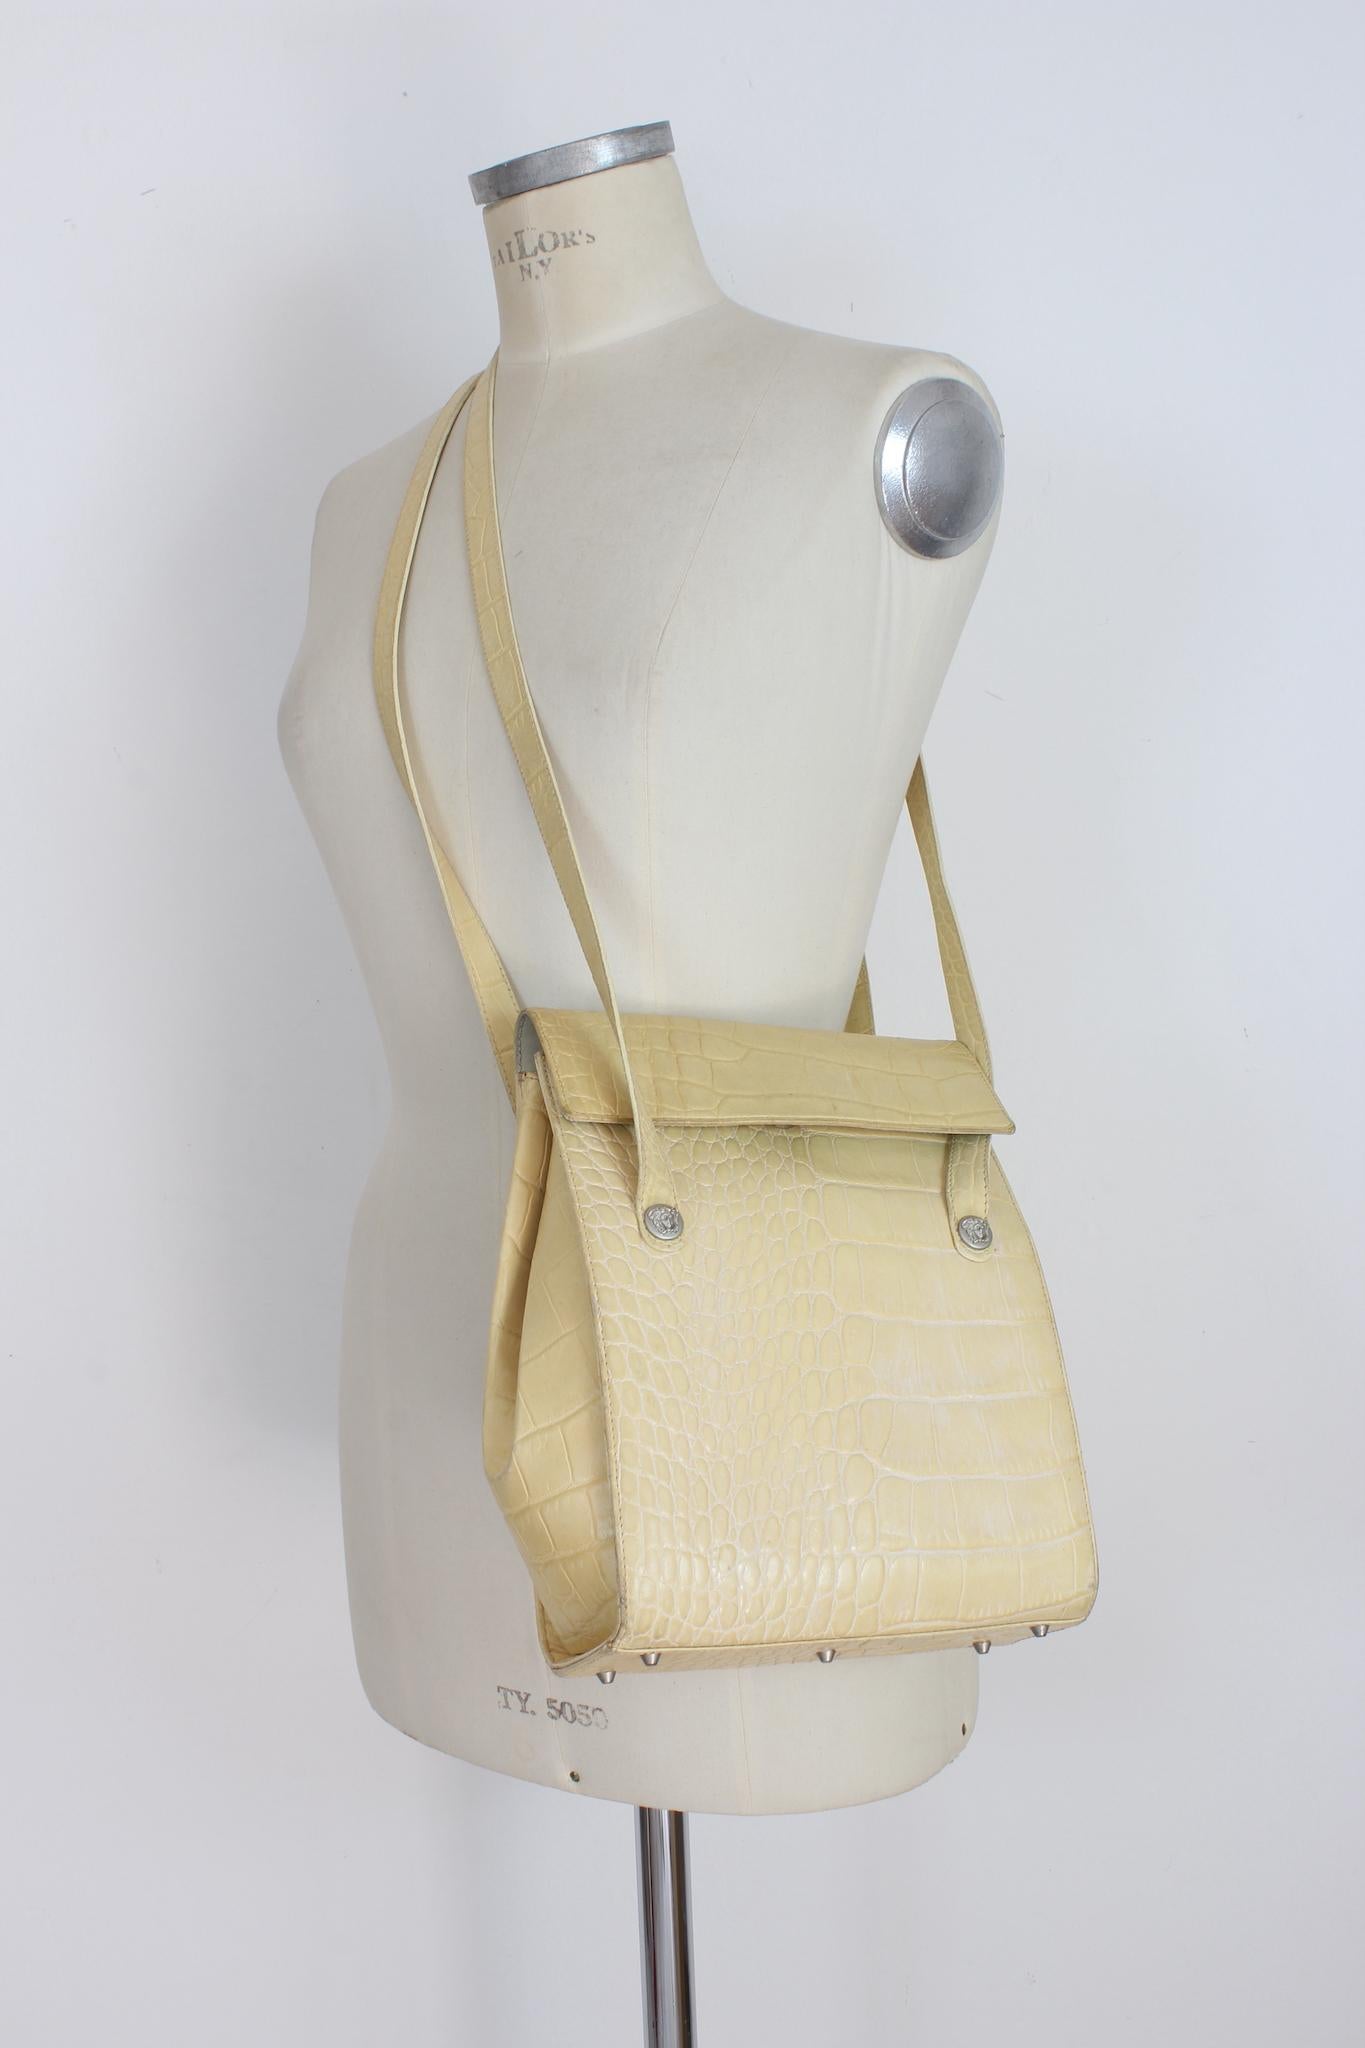 Gianni Versace vintage 90s beige bucket bag. Rigid shoulder bag in crocodile-print leather, medusa logo on the shoulder straps. Clip closure, internal pocket, lined with monogram print. Made in italy.

Height: 28 cm
Width: 20 cm
Depth: 6 cm
Shoulder